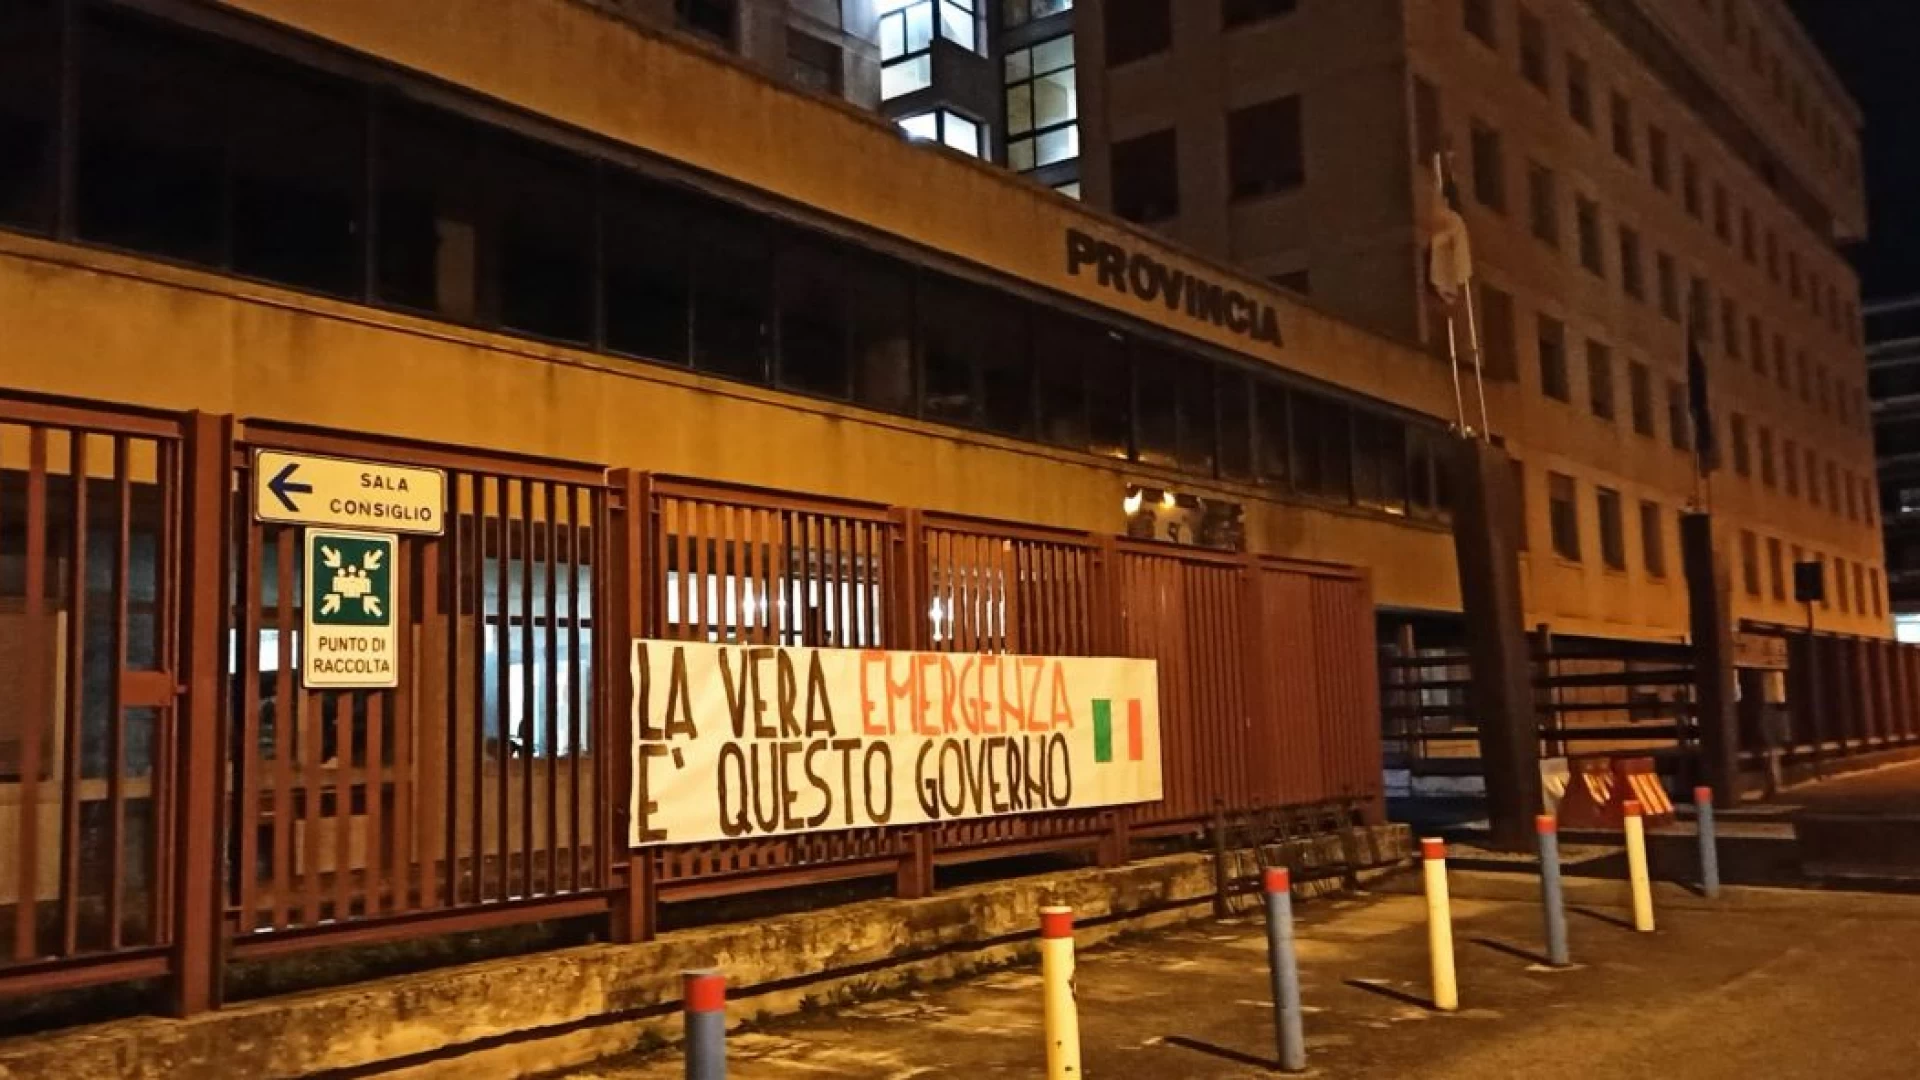 Nuovo Dcpm: "la vera emergenza è questo governo", striscioni in tutta Italia su sedi itituzionali 